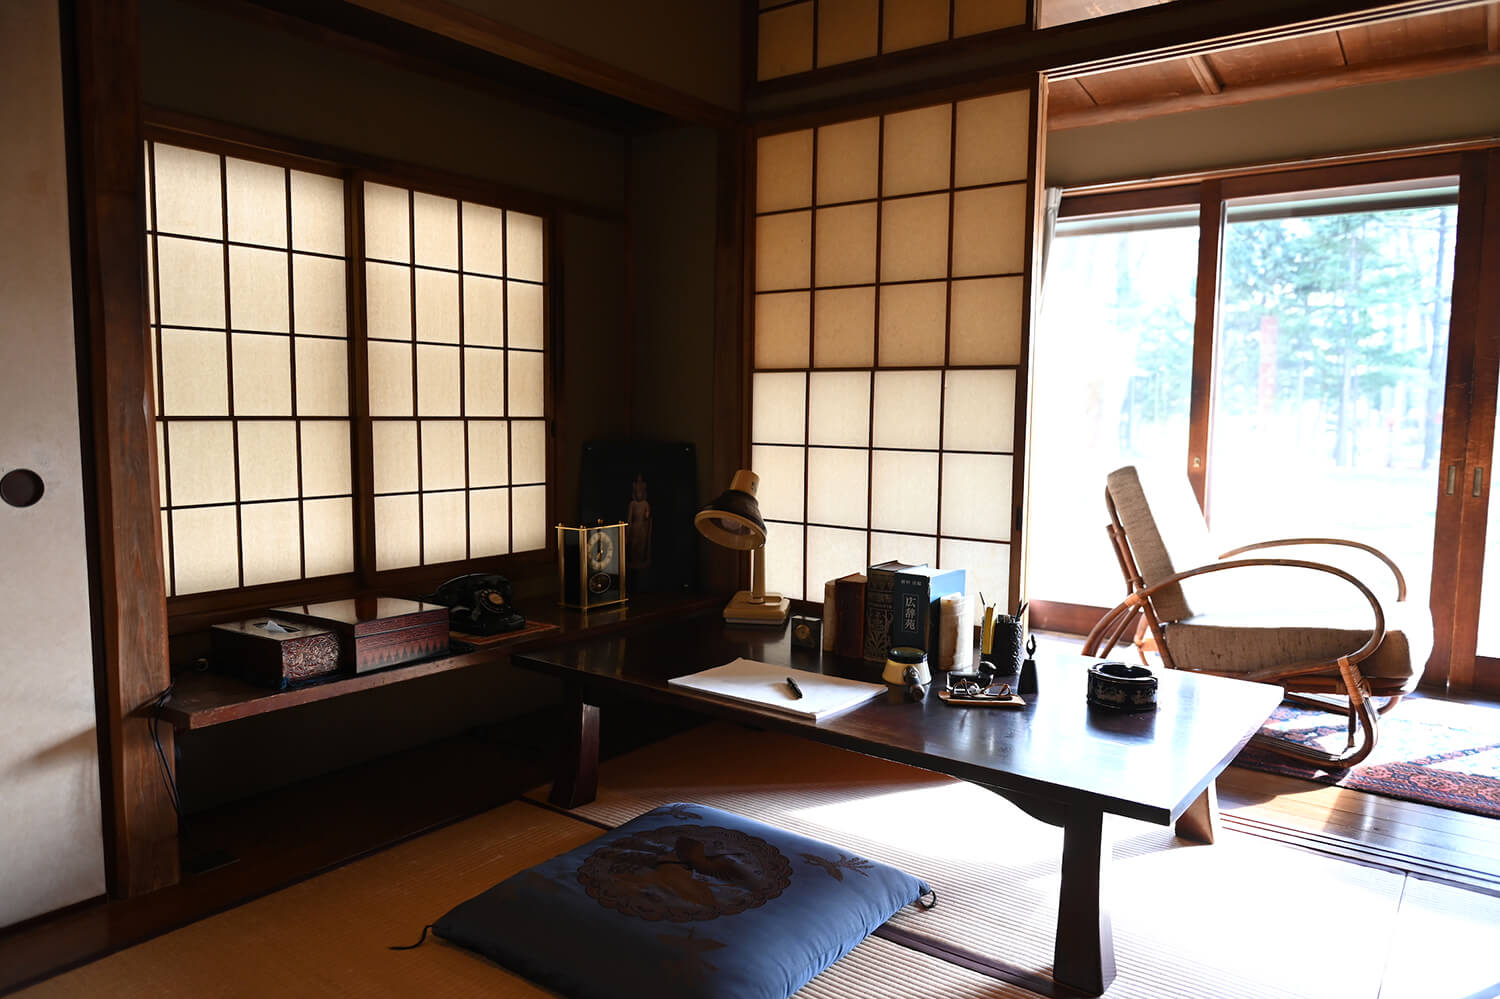 井上靖が住んでいた東京都世田谷区の家にあった書斎が移築された館内には、直筆原稿などが展示